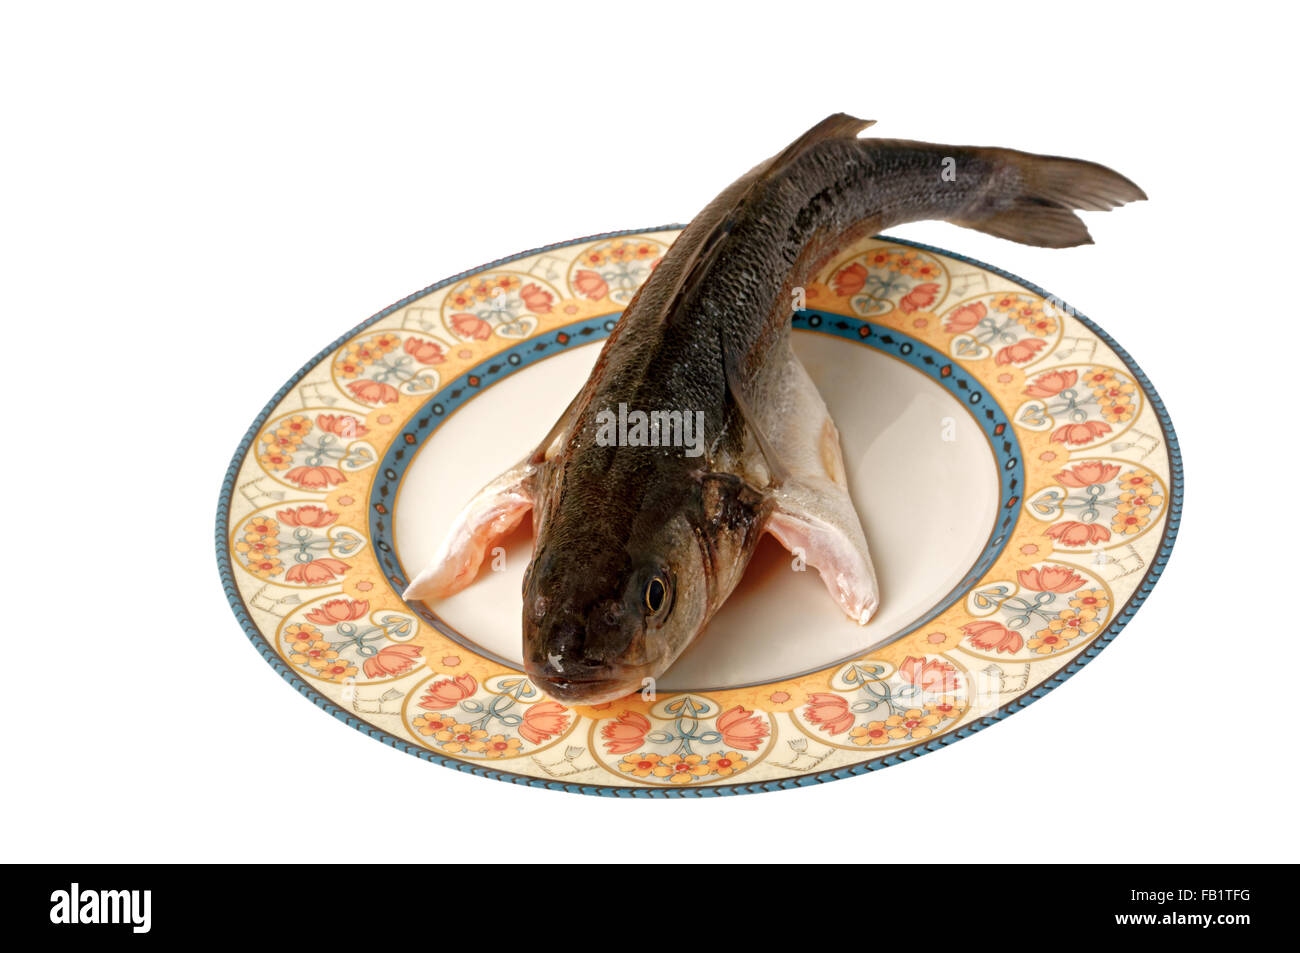 Gourmet sea fish spigola seabass Stock Photo